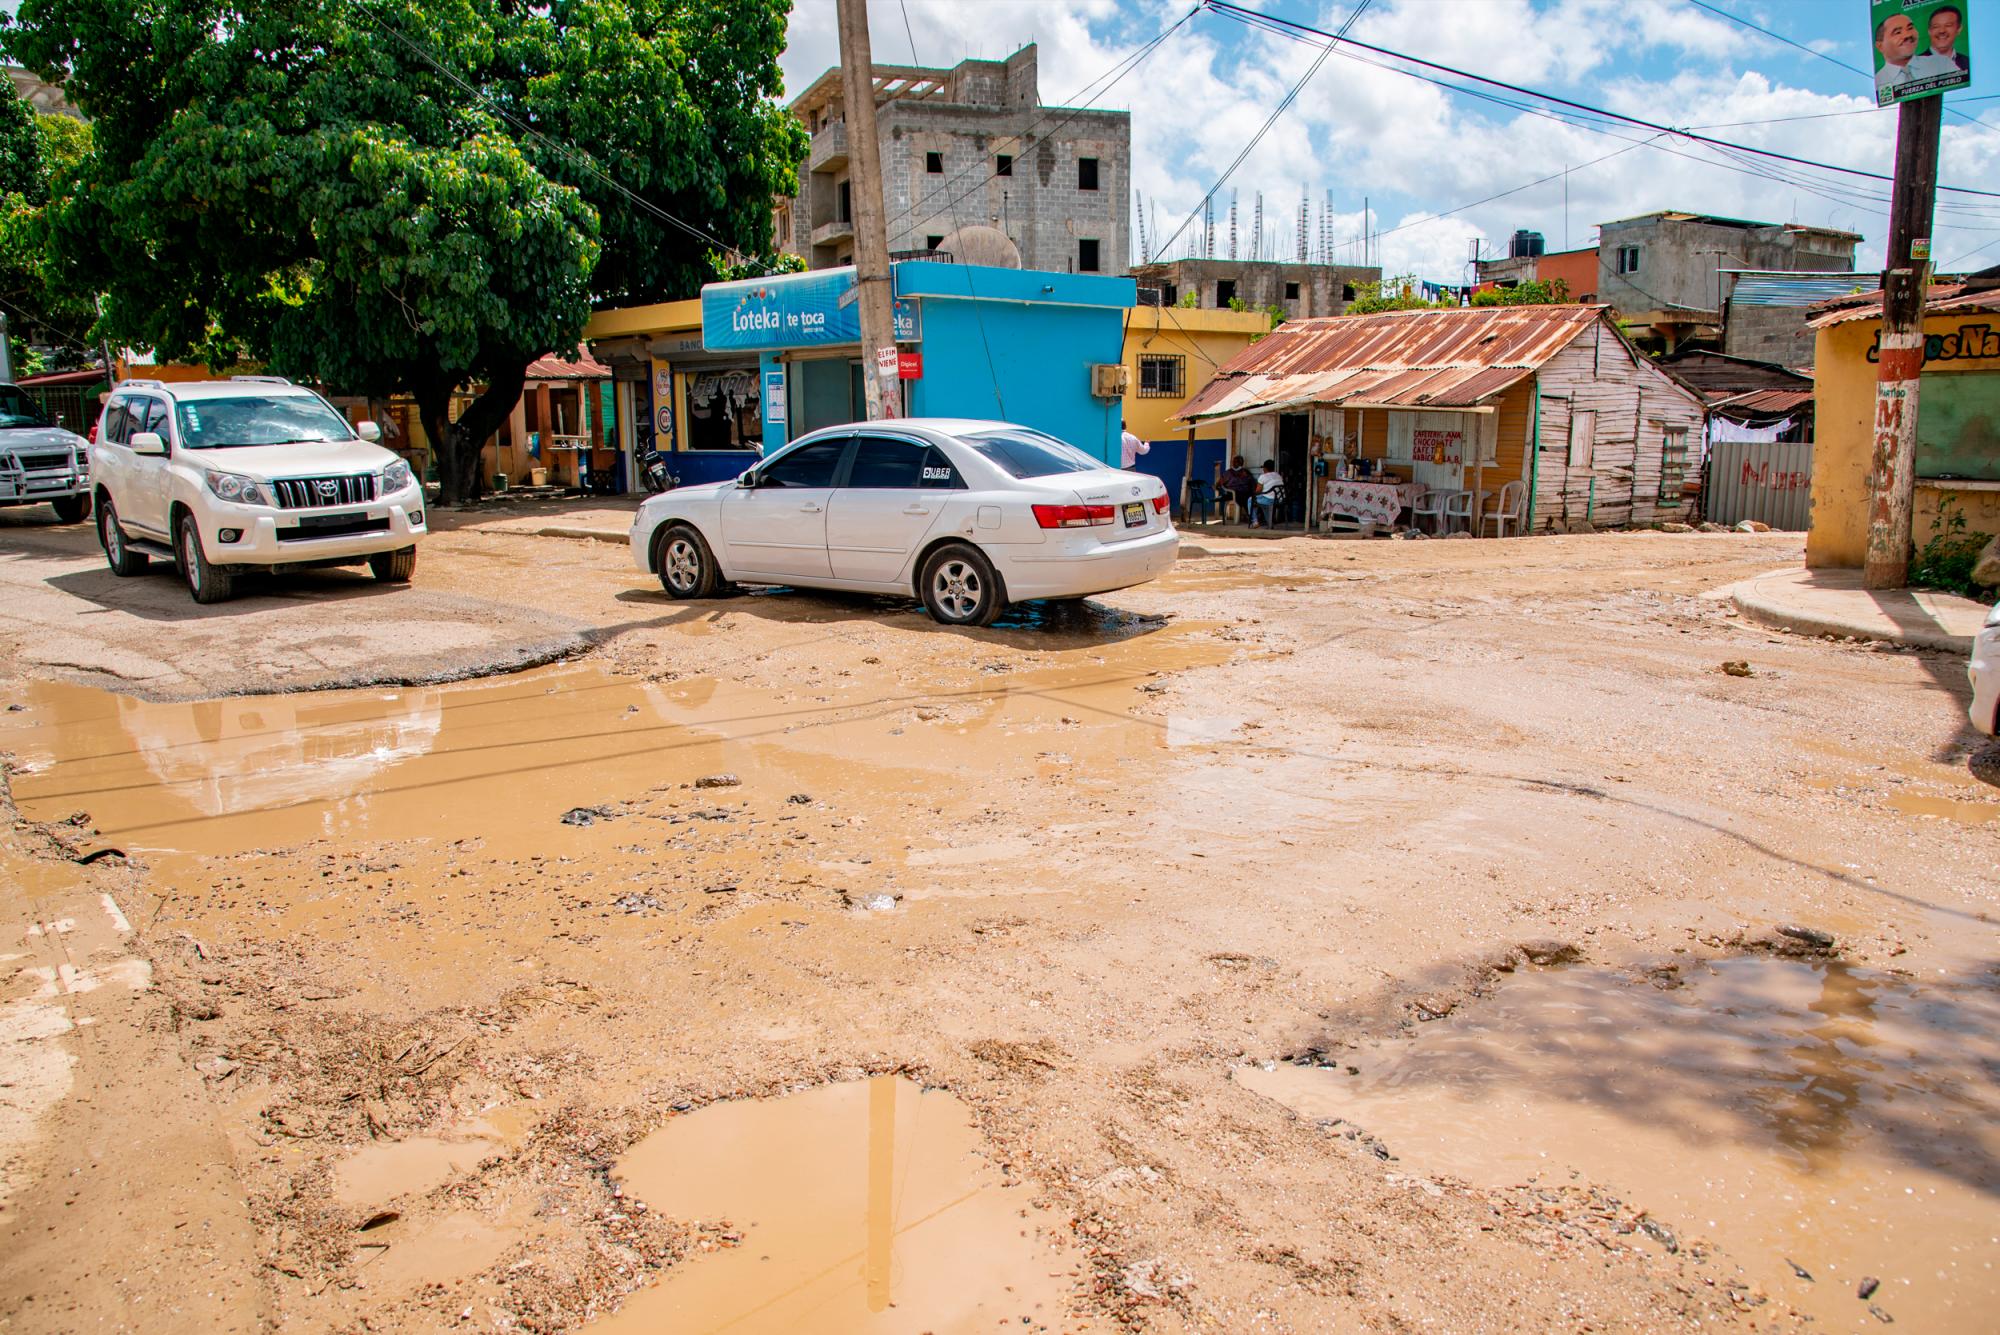 El mal estado de la carretera afecta a los vecinos del sector a los ciudadanos que van de paso. (Foto: Juan Miguel Peña)